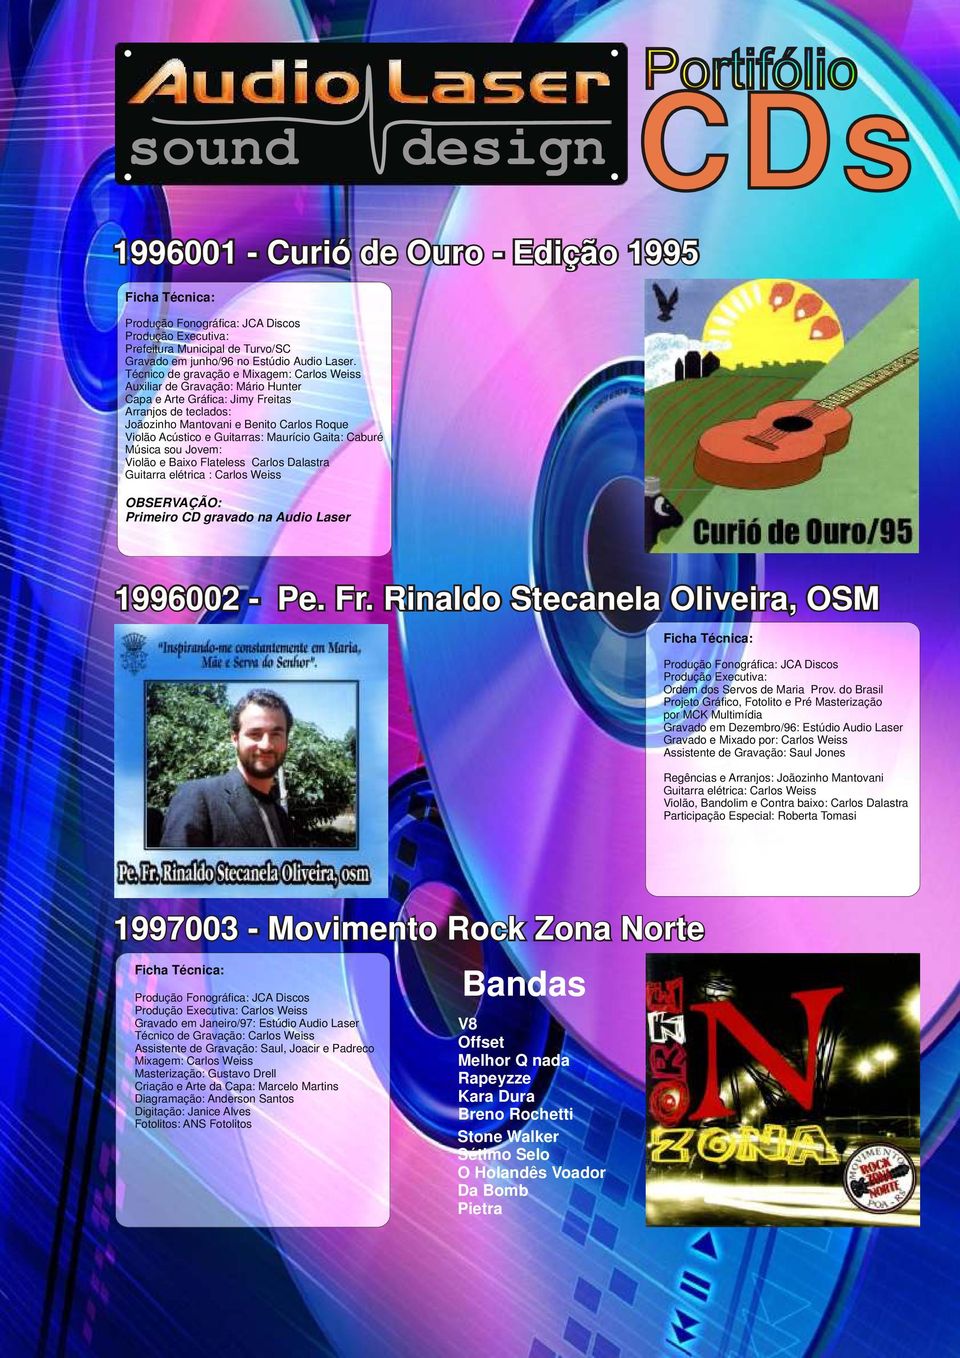 Guitarras: Maurício Gaita: Caburé Música sou Jovem: Violão e Baixo Flateless Carlos Dalastra Guitarra elétrica : Carlos Weiss OBSERVAÇÃO: Primeiro CD gravado na Audio Laser 1996002 - Pe. Fr.